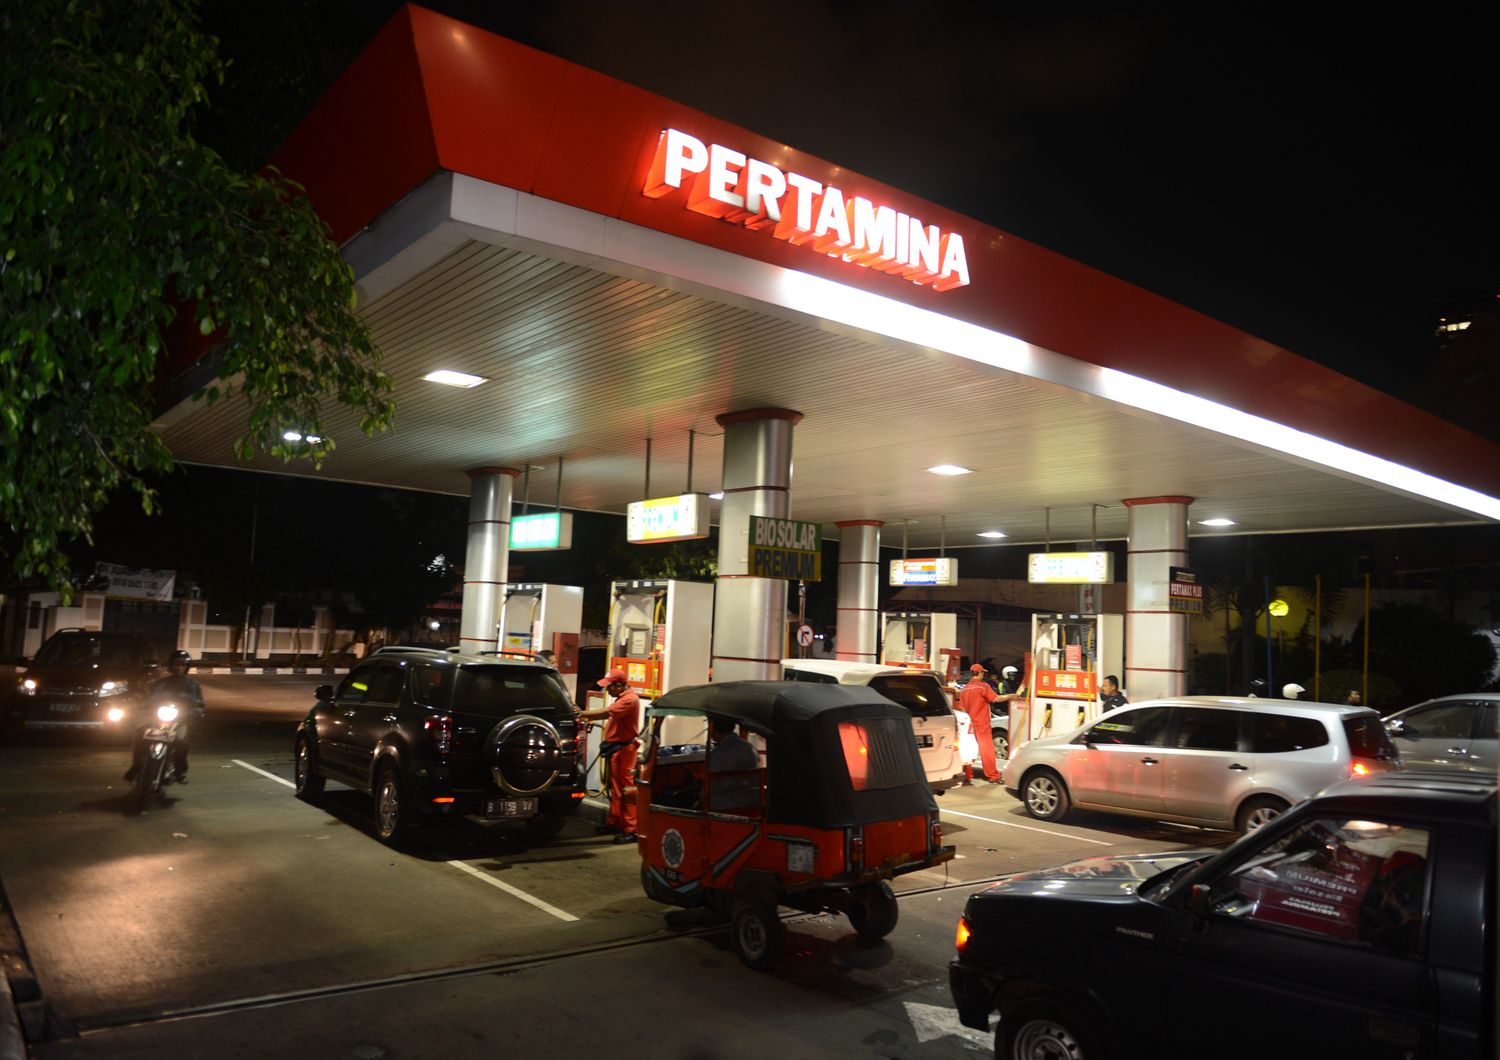 &nbsp;Pertamina Oil &amp; Gas Indonesia